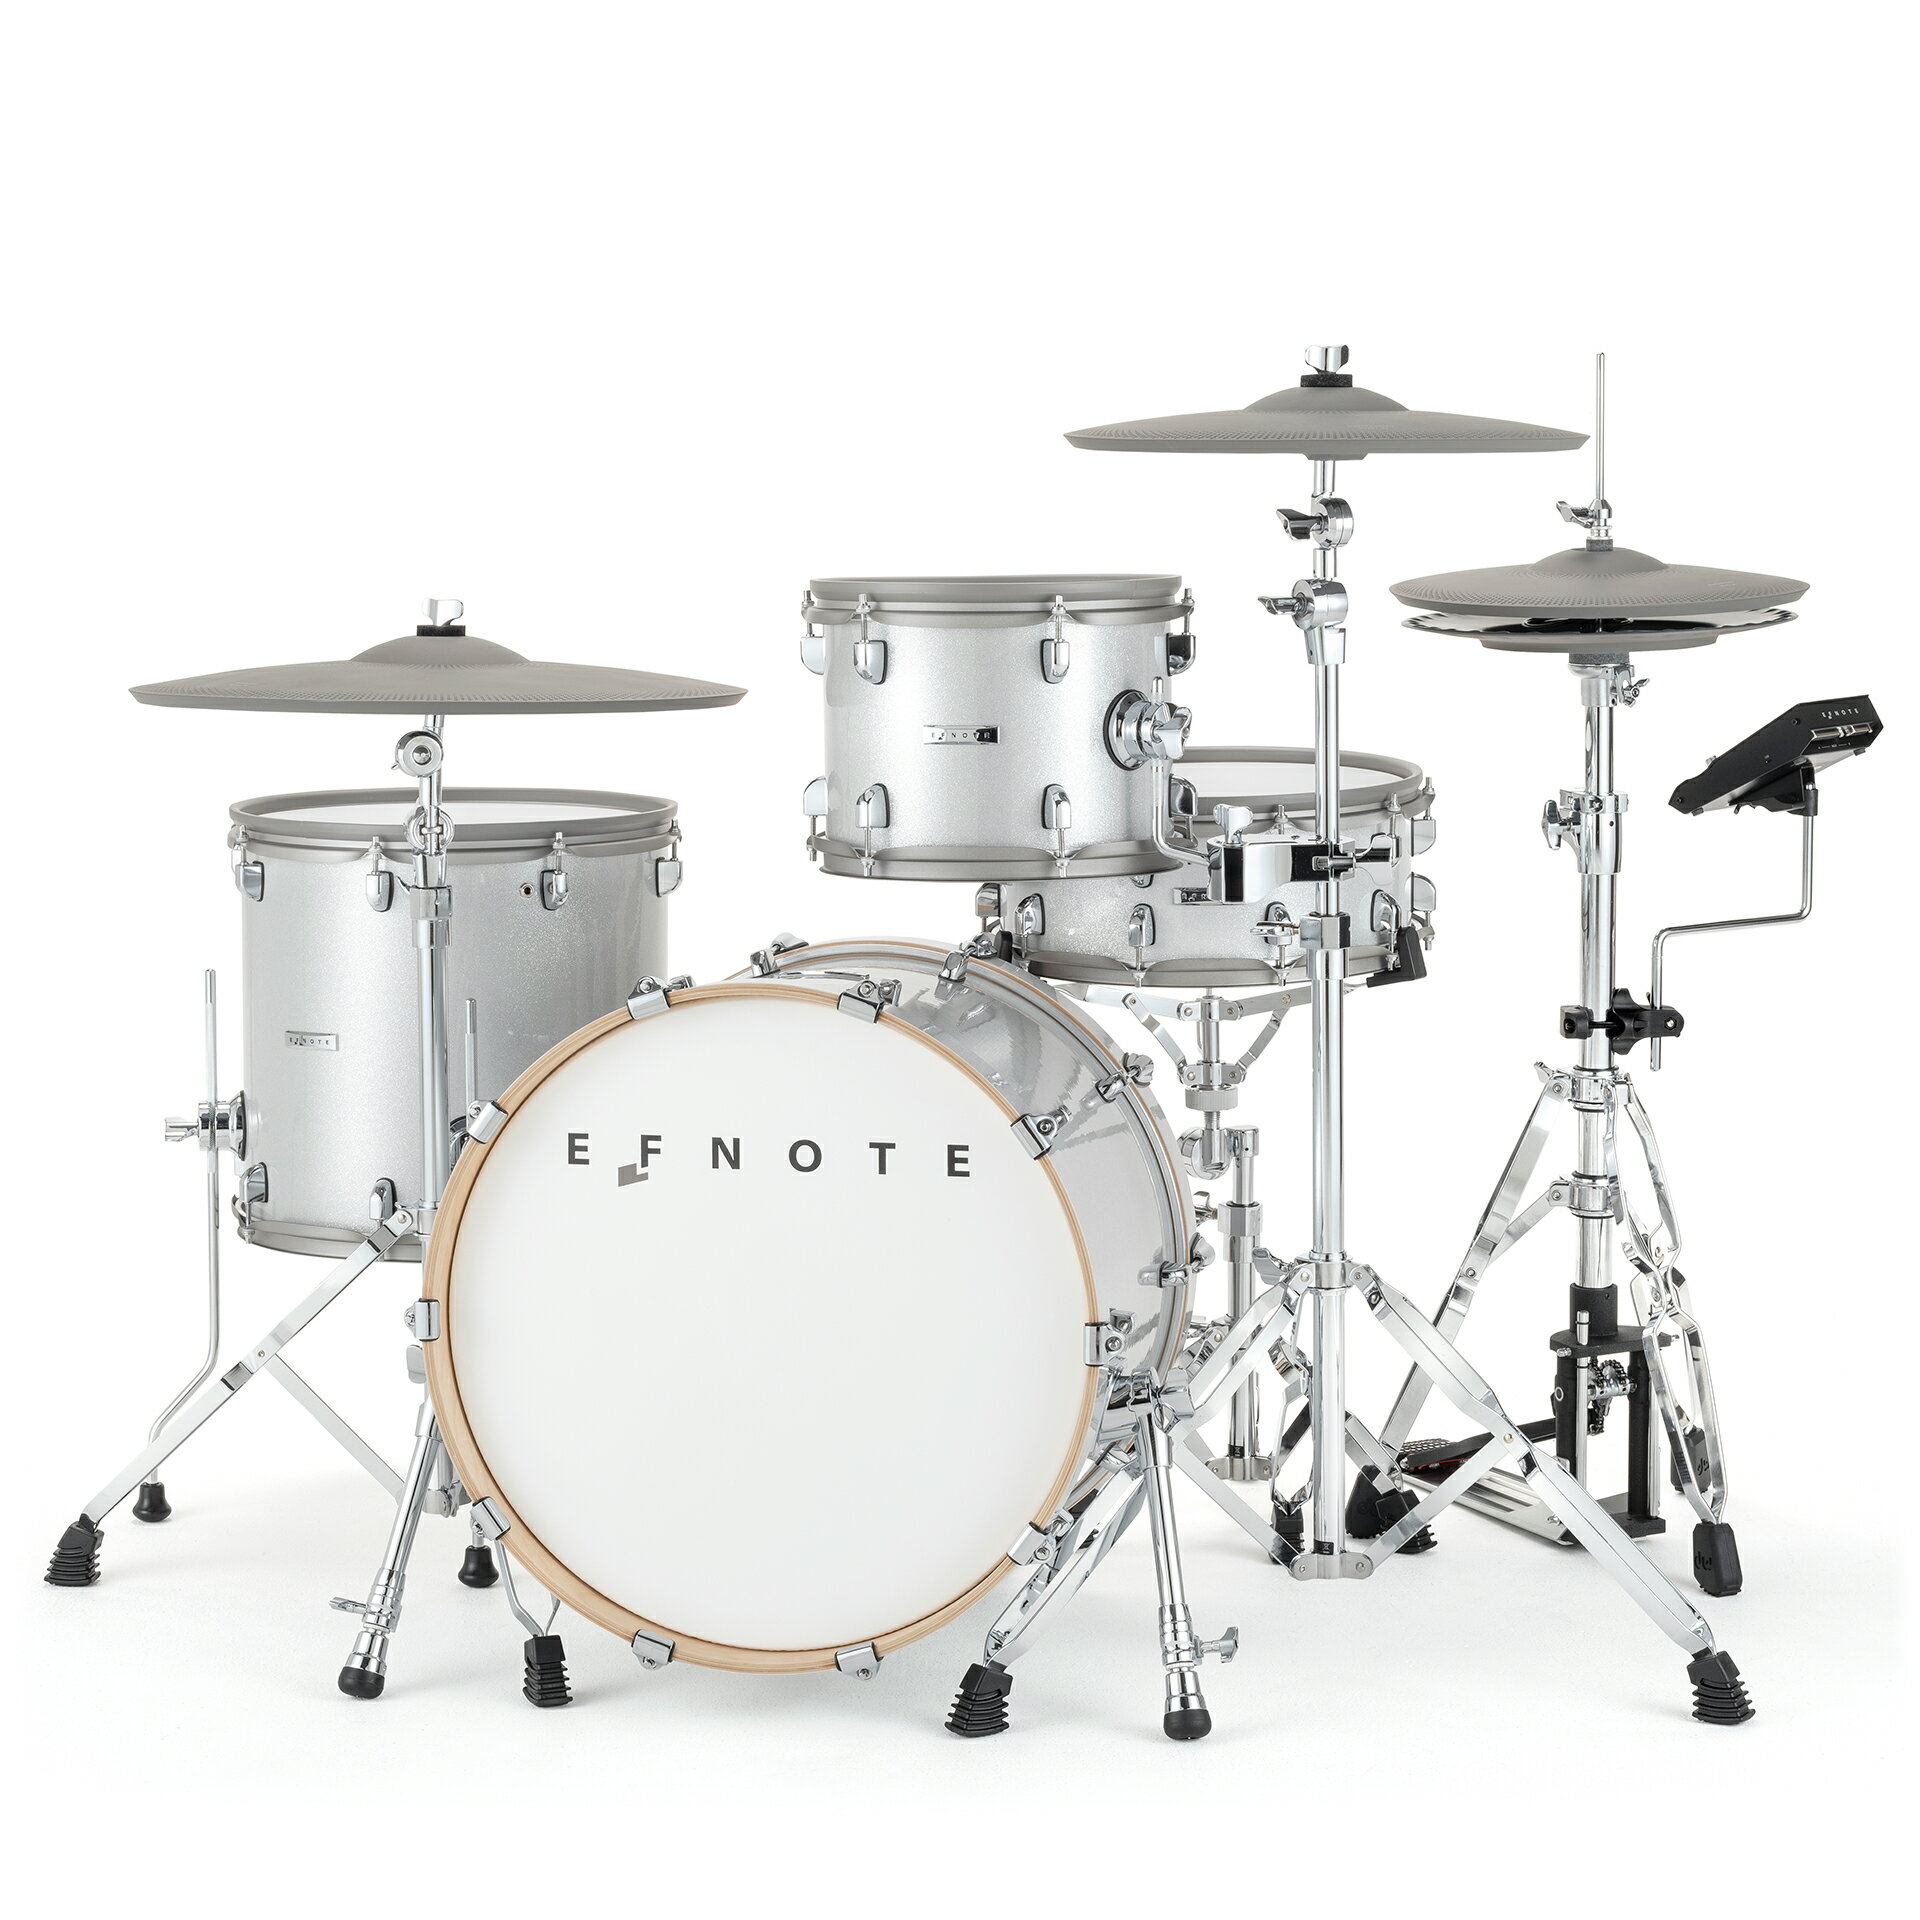 EFNOTE 7 電子鼓 日本品牌 美感品質兼具